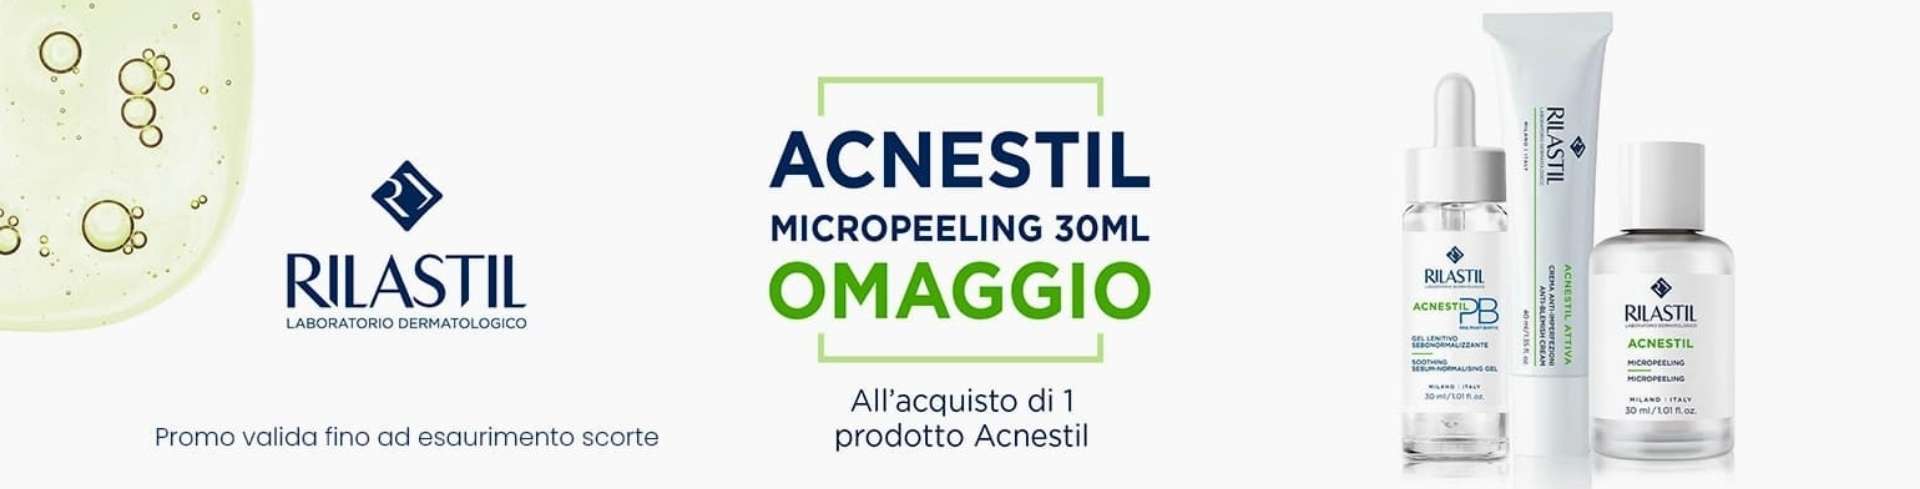 banner promozionale Rilastil Acnestil micropeeling omaggio desktop